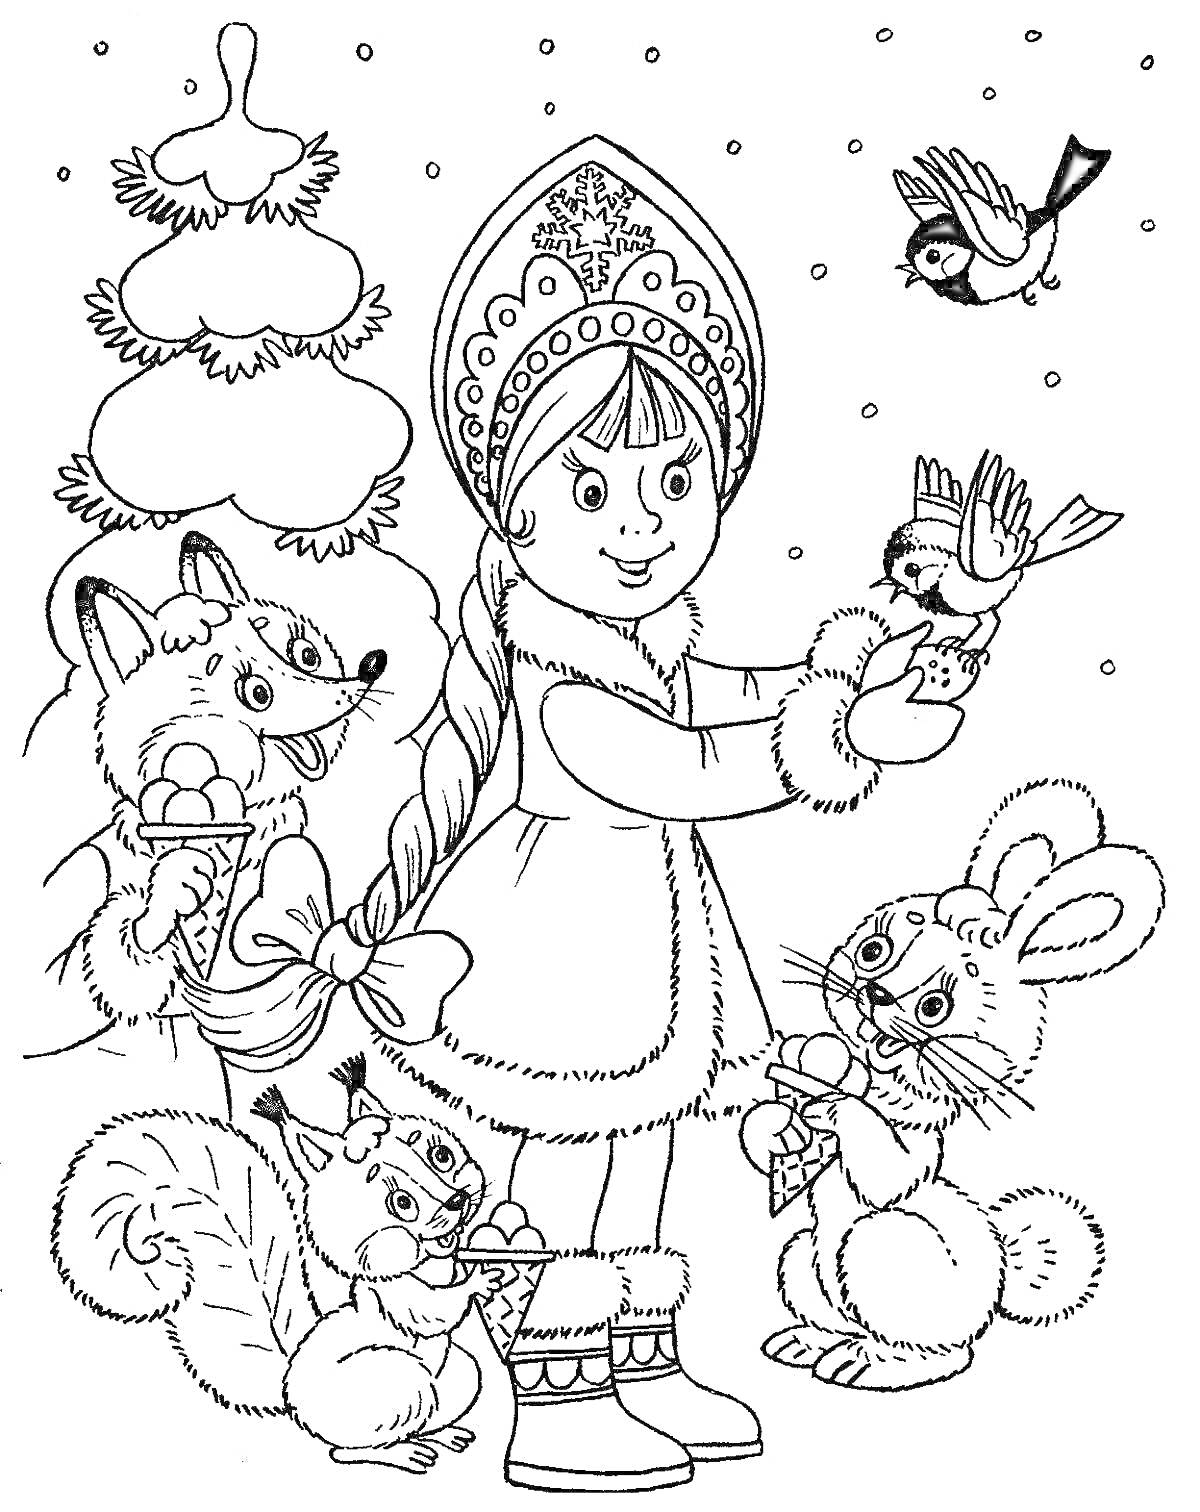 Раскраска Снегурочка с косой в кокошнике, держащая птицу, рядом лесные животные (лиса, белка, заяц), на заднем фоне елка и снег